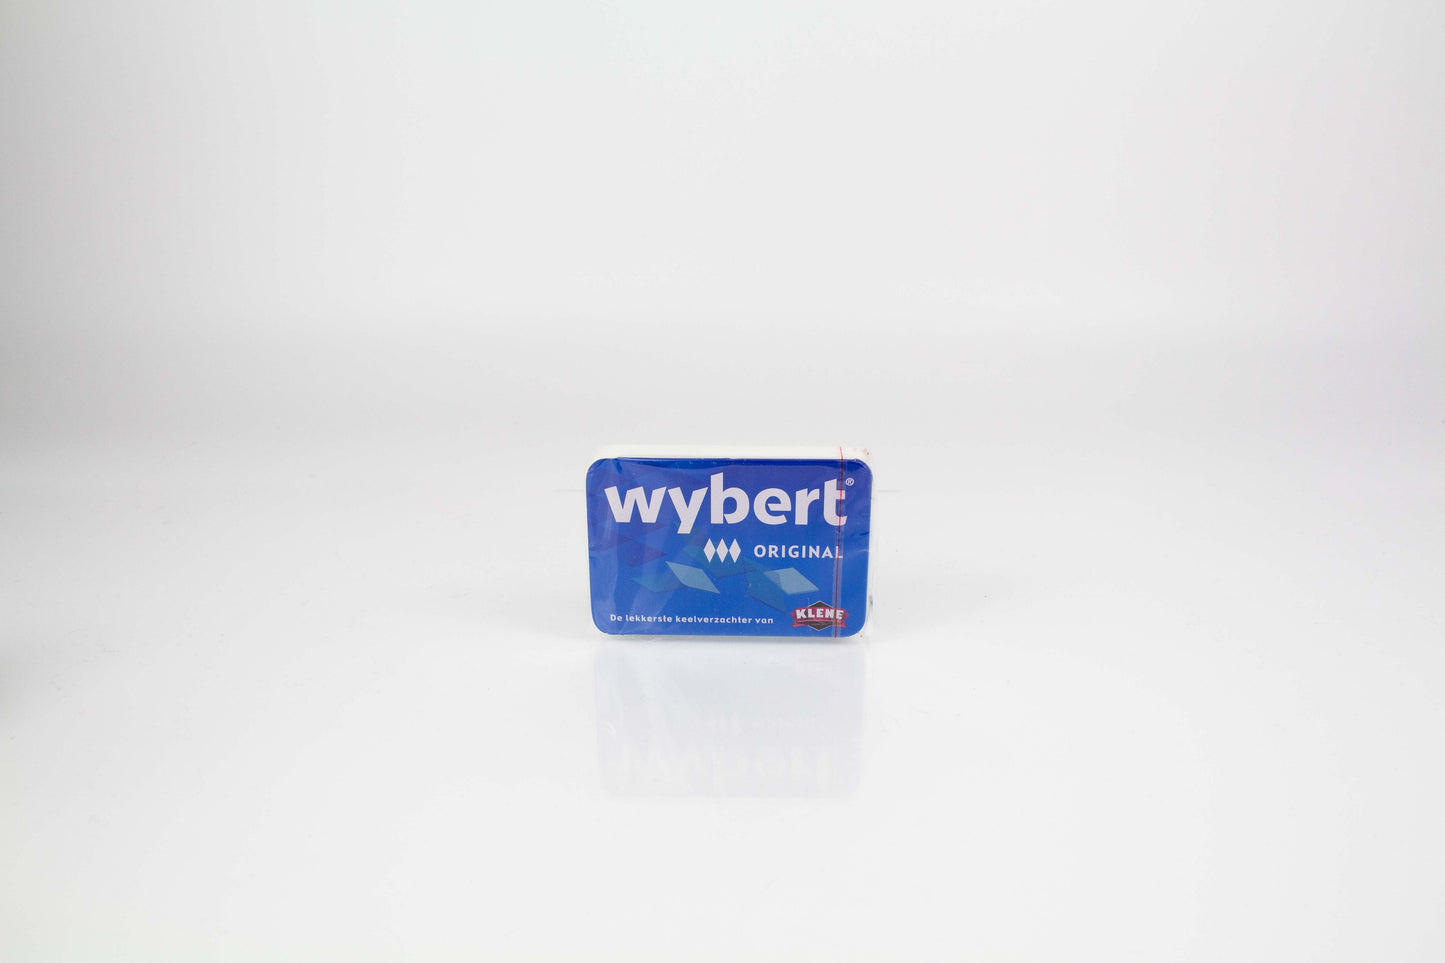 Wybert Original Duo Pack